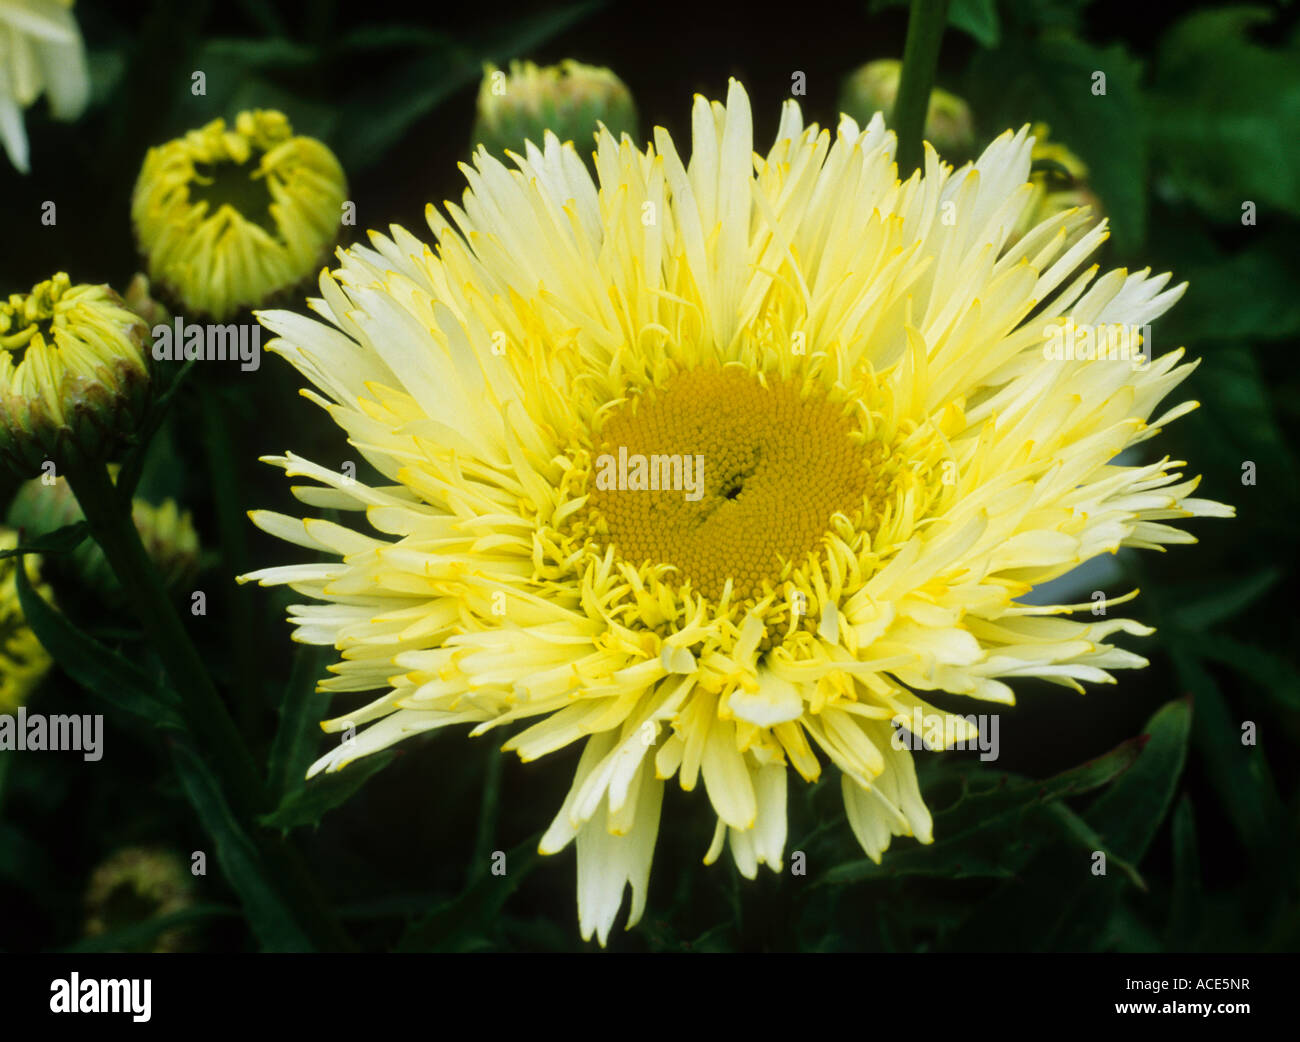 Leucanthemum x superbum 'Goldrausch' syn. Goldrush, yellow flower flowers, garden plant Stock Photo